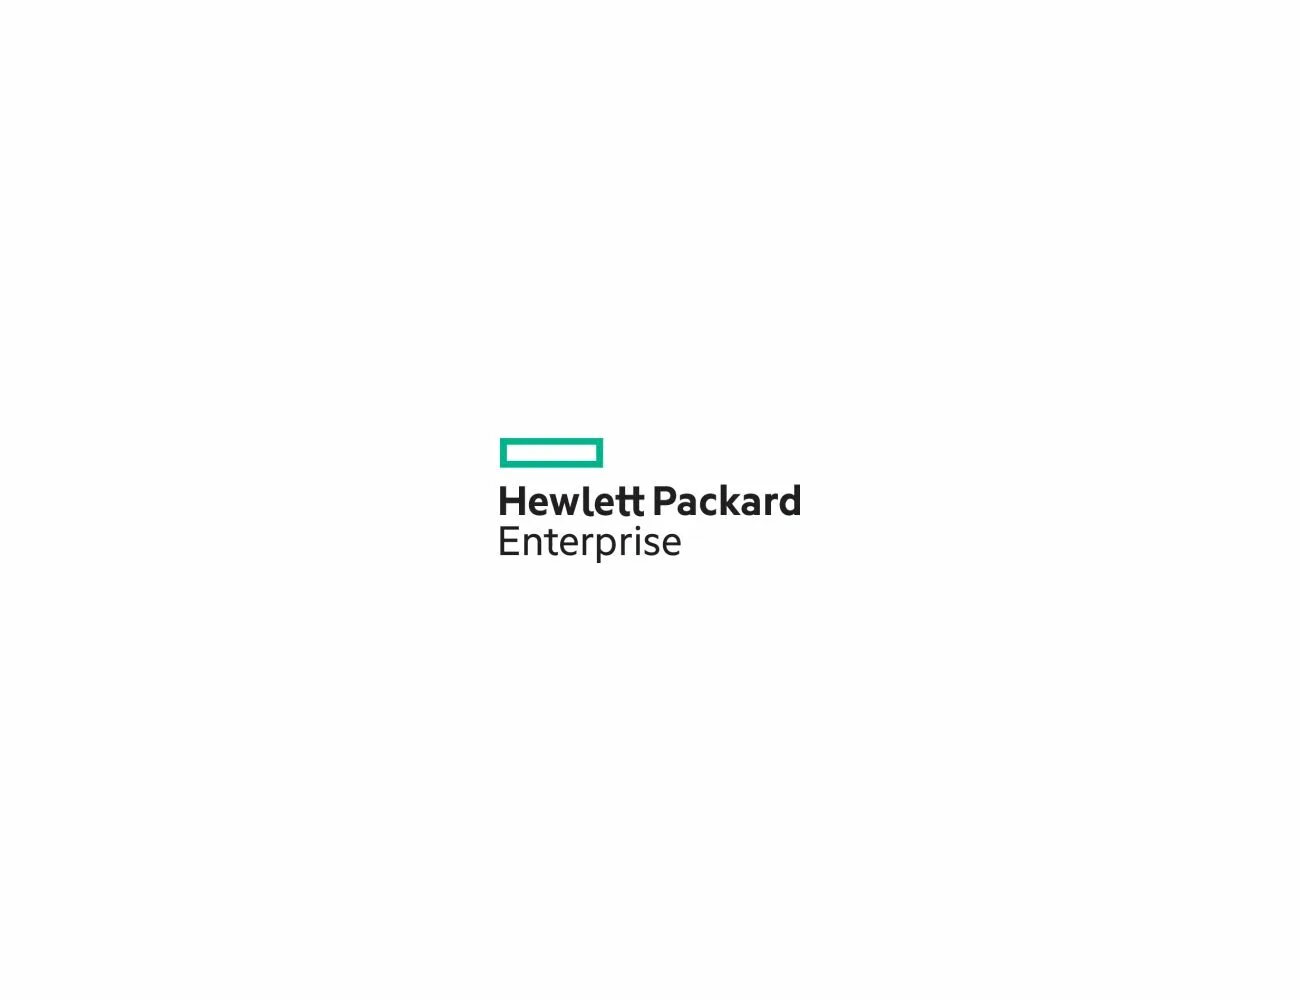 Hewlett packard enterprise. Hewlett Packard Enterprise (HPE). Hewlett Packard Enterprise logo. Опция HPE q1j29a. Hewlett Packard Enterprise logo f1.